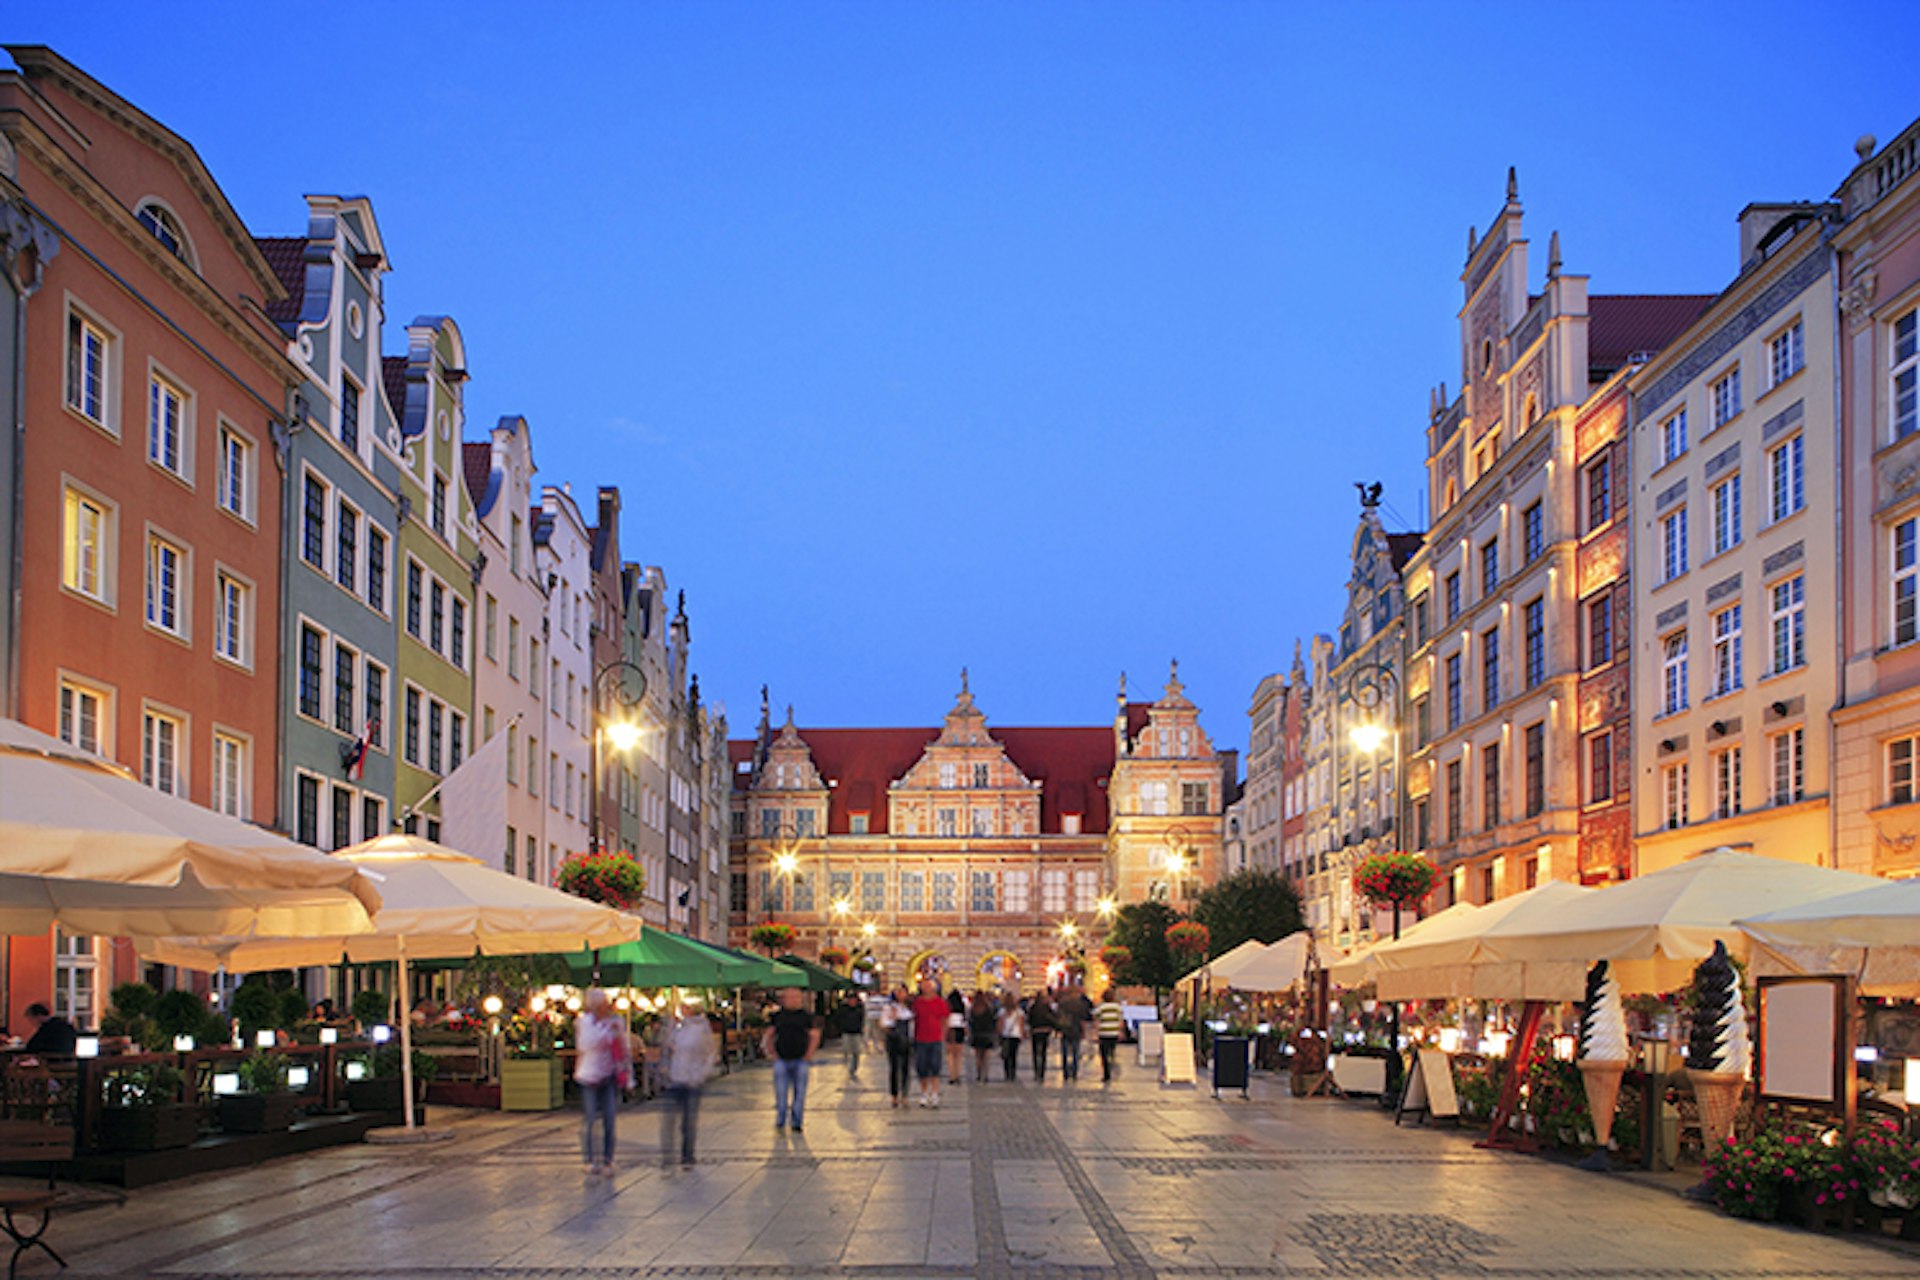 Gdańsk's Dlugi Targ Square